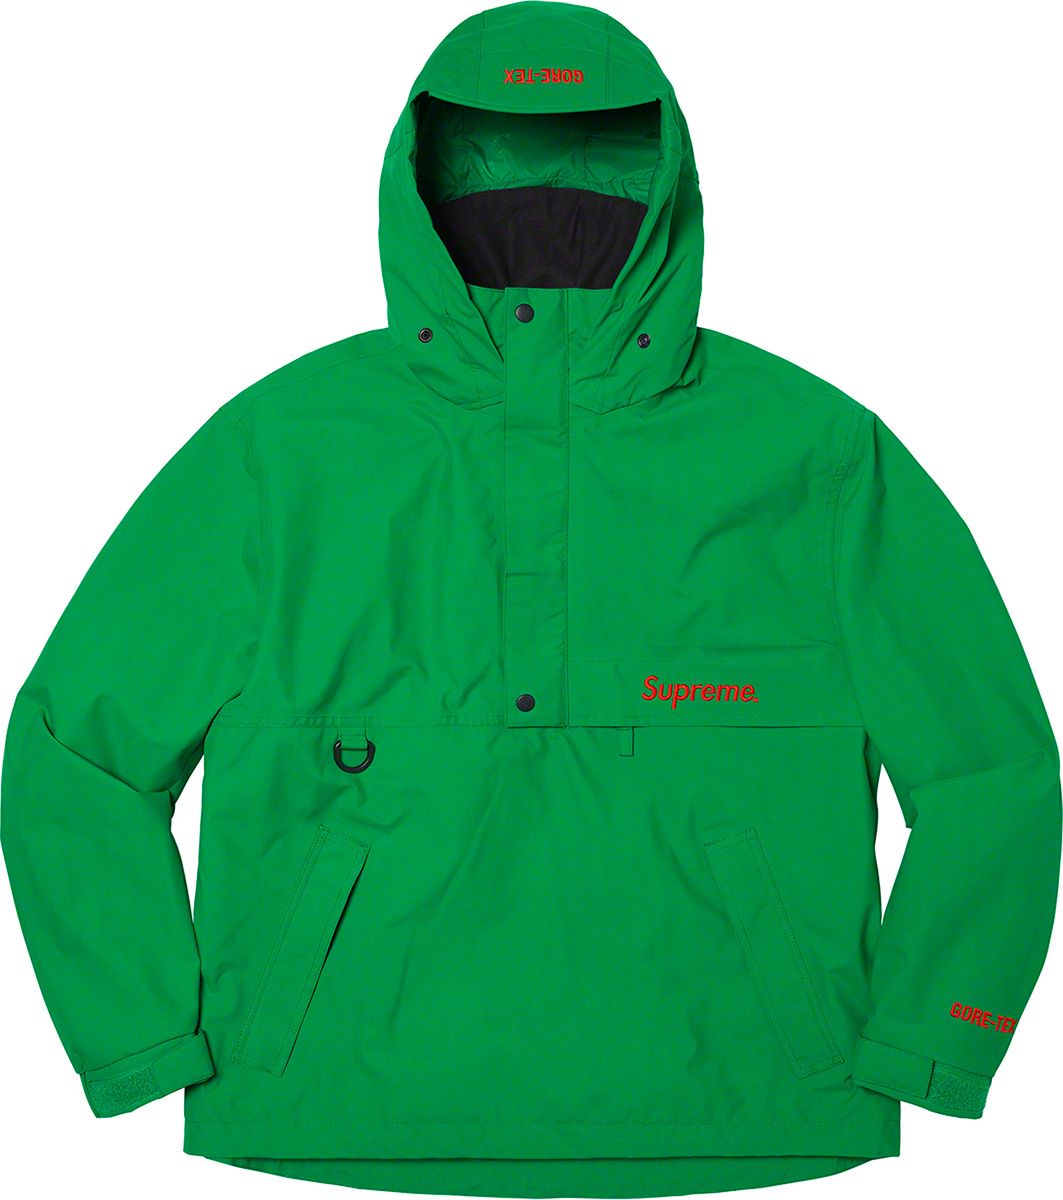 商品名間違ってるかもしれません09aw Supreme tracker jacket L Green